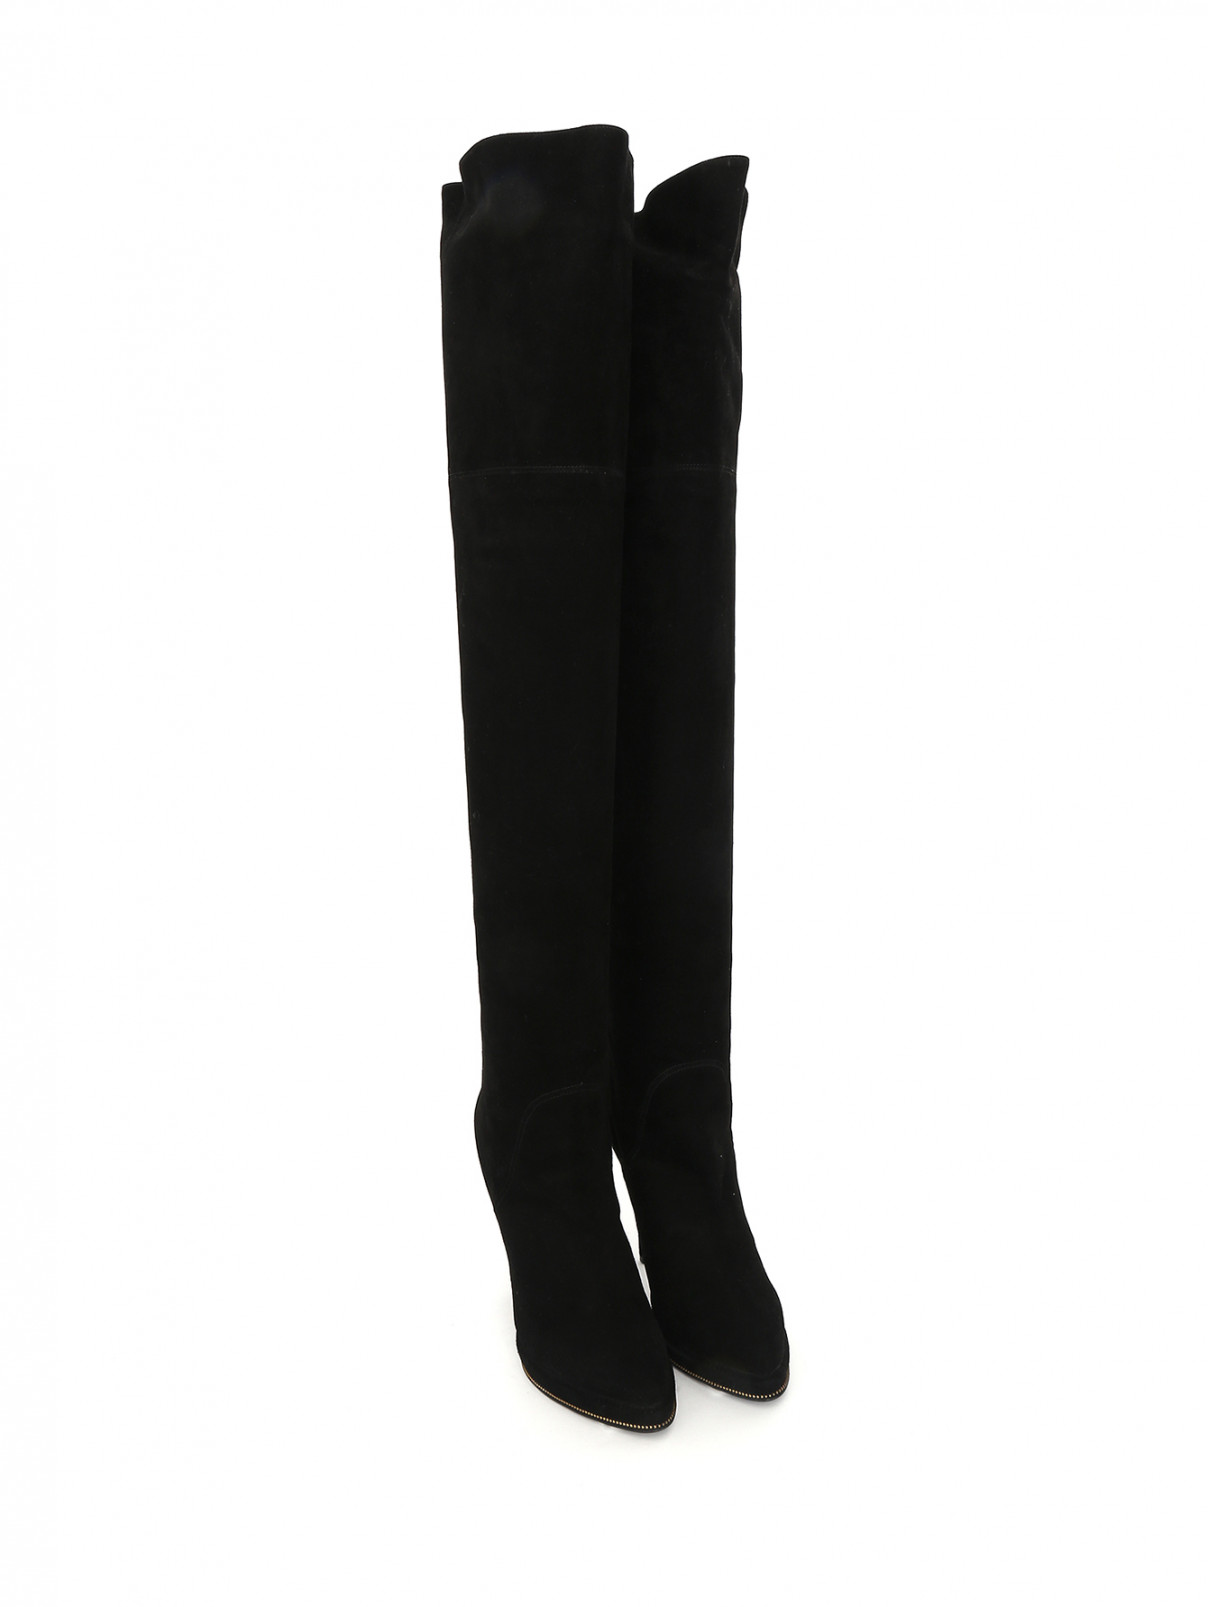 Ботфорты из замши на высоком каблуке Givenchy  –  Общий вид  – Цвет:  Черный